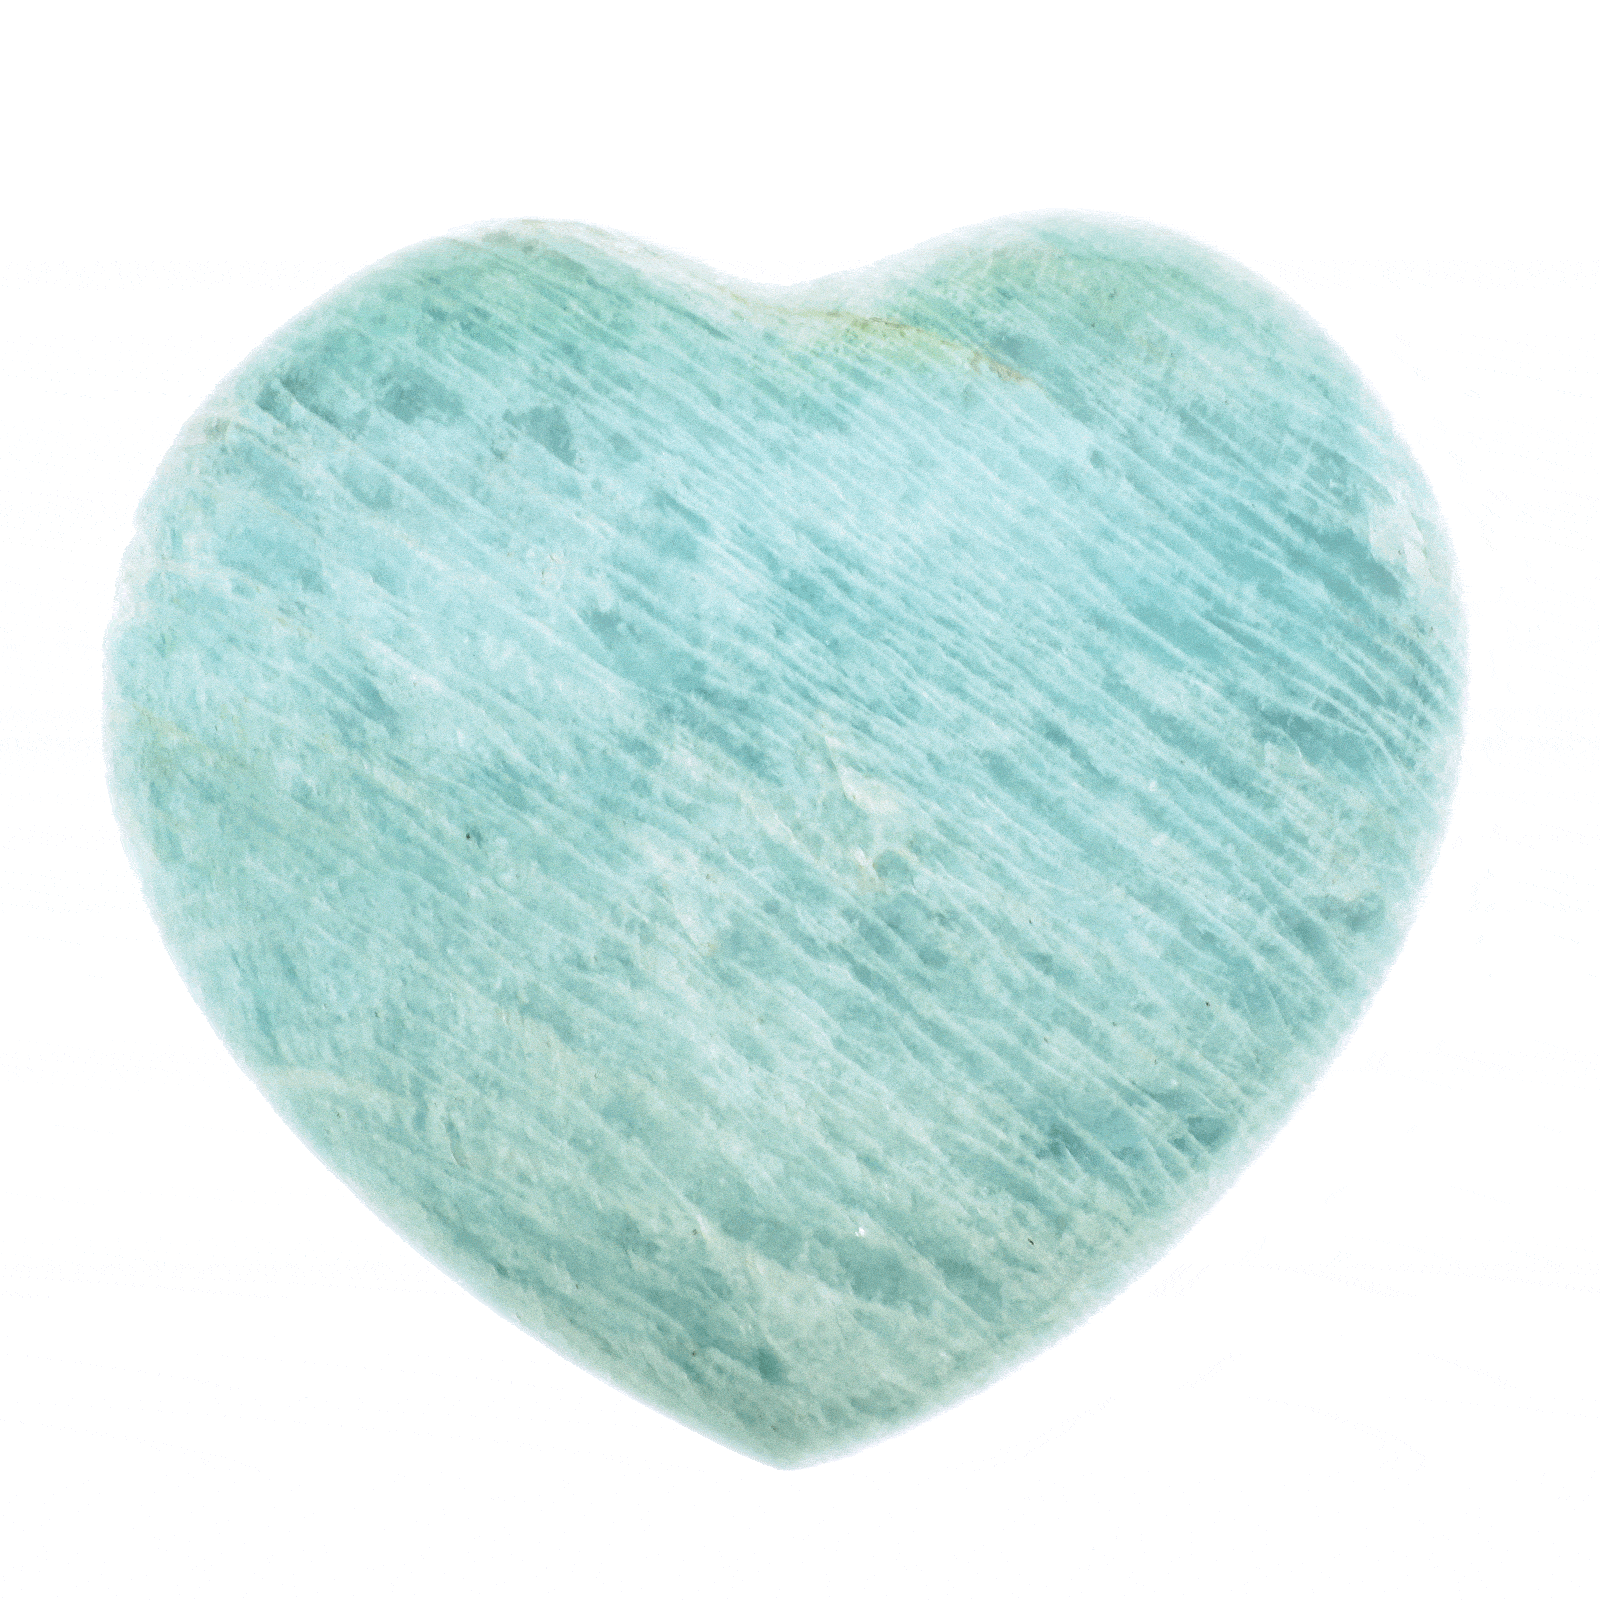 Φυσική πέτρα Αμαζονίτη σκαλισμένη στη μορφή καρδιάς, μεγέθους 7cm. Αγοράστε online shop.